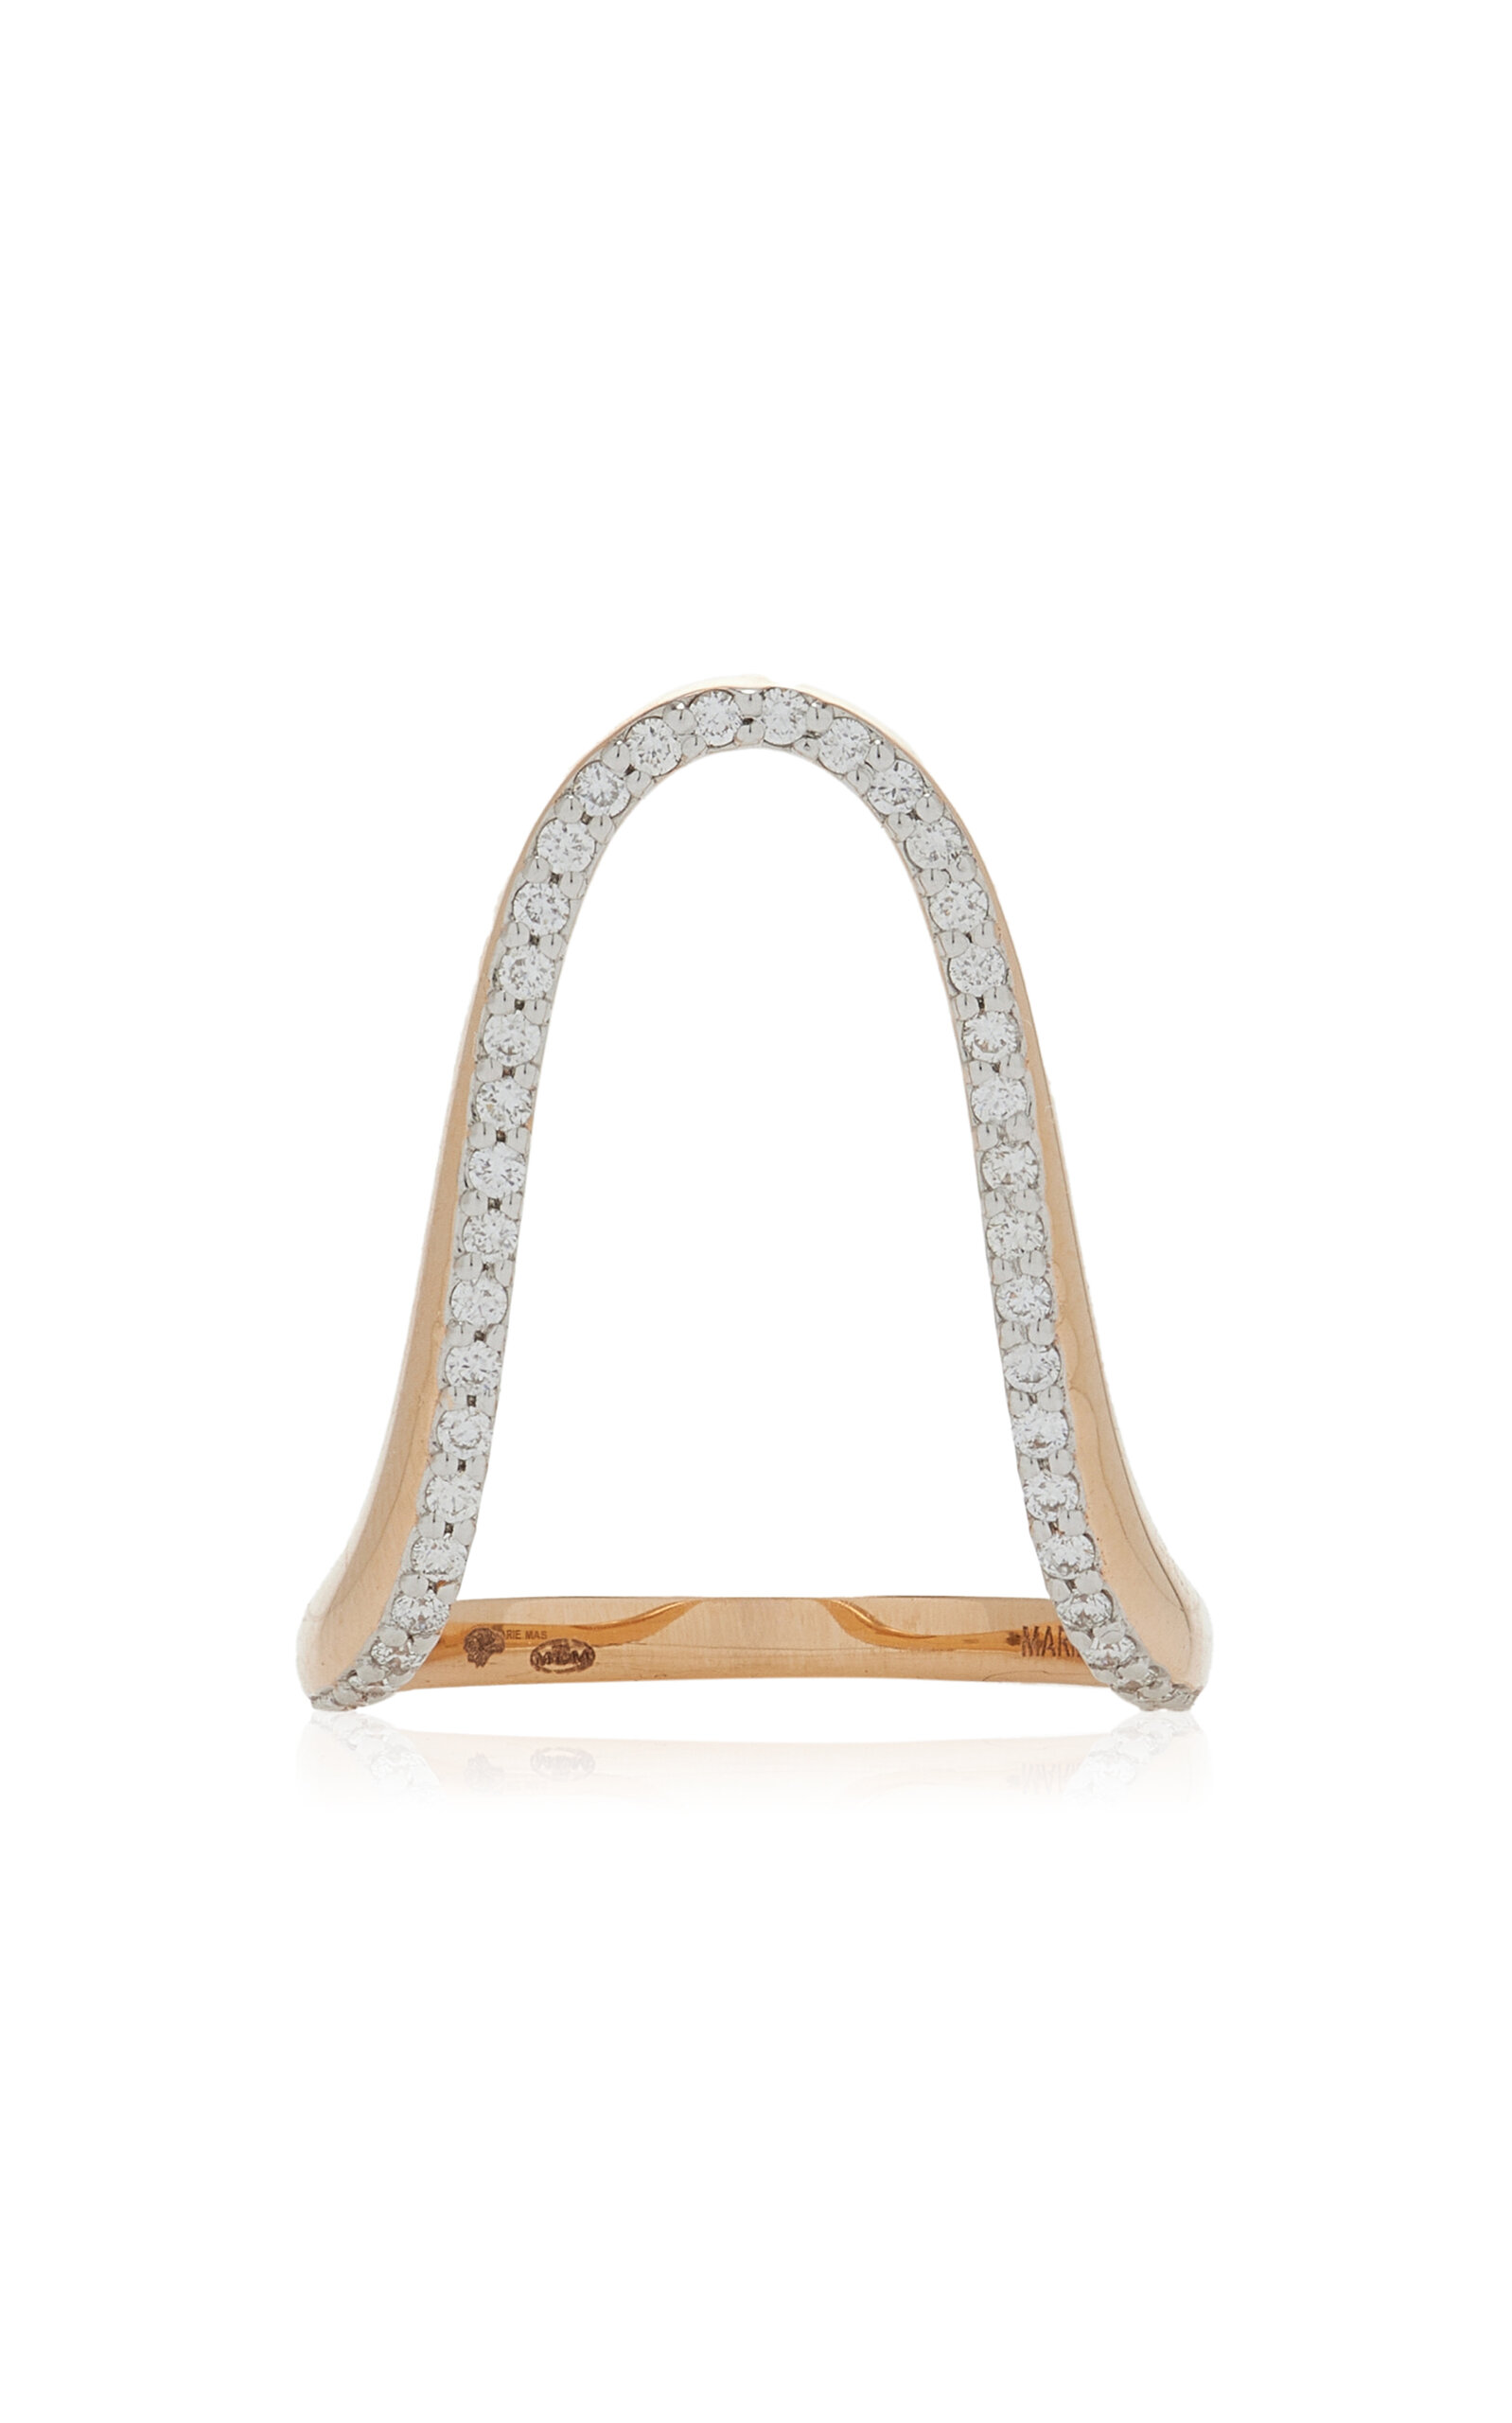 Marie Mas Radiant 18k Rose Gold Diamond Ring